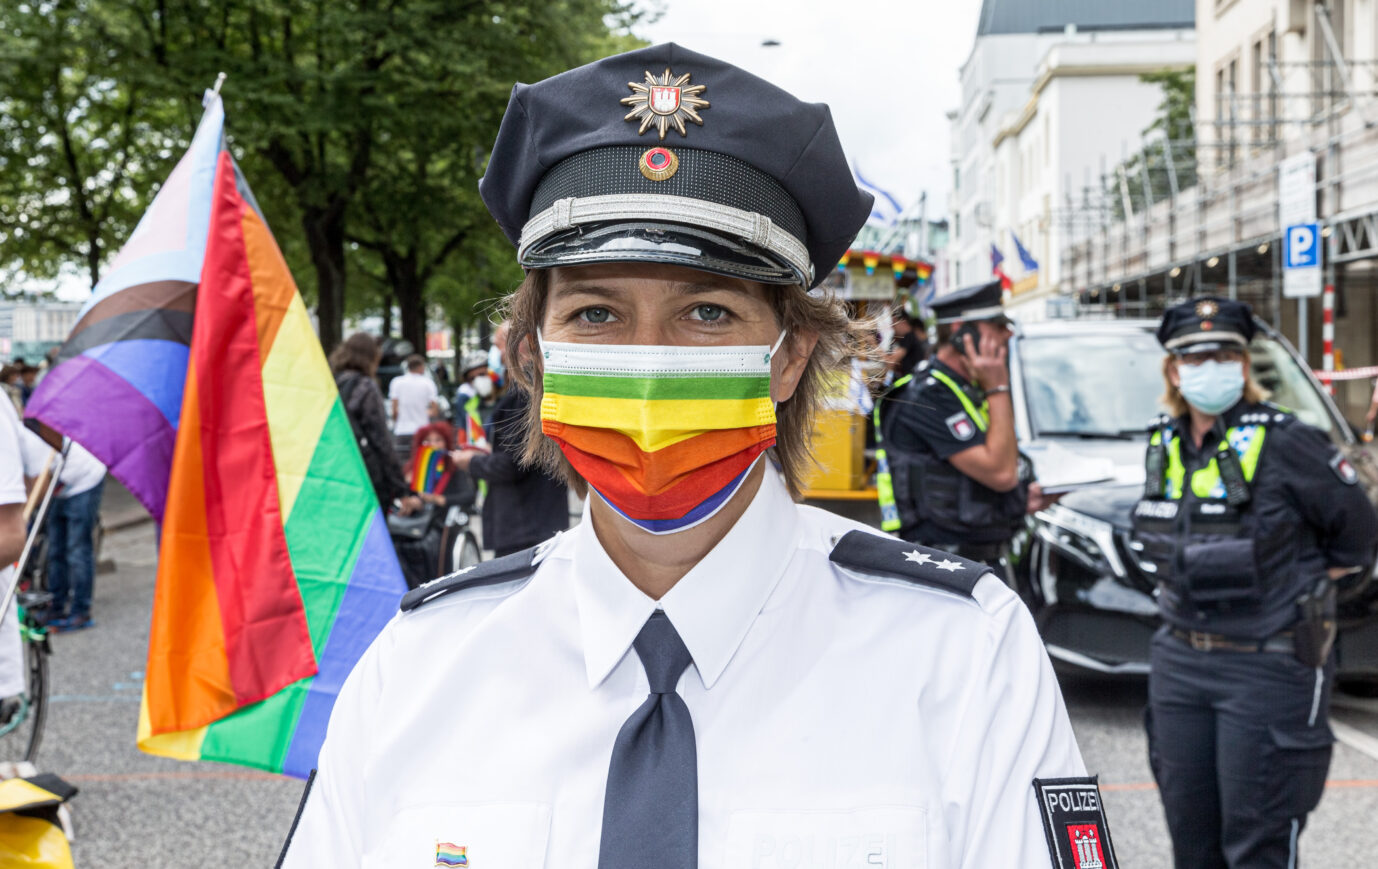 Die Bundespolizei will für mehr Diversität und Vielfalt sorgen. Zu diesem Zweck führt sie eine Diversitätskonzeption ein.